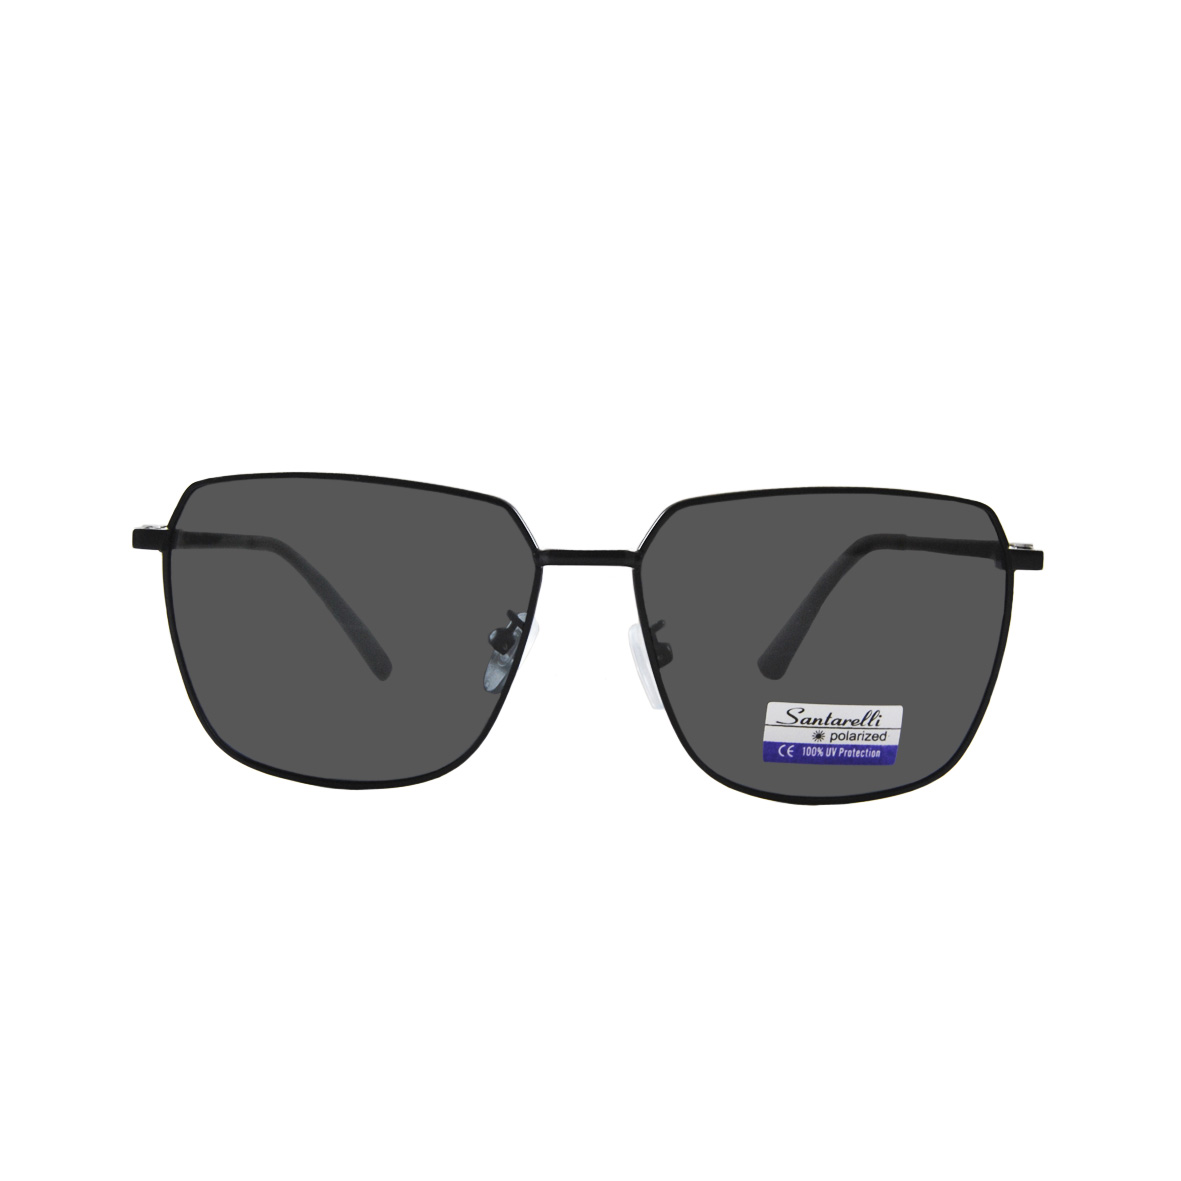 Солнцезащитные очки Santarelli модель 9124                 -25%